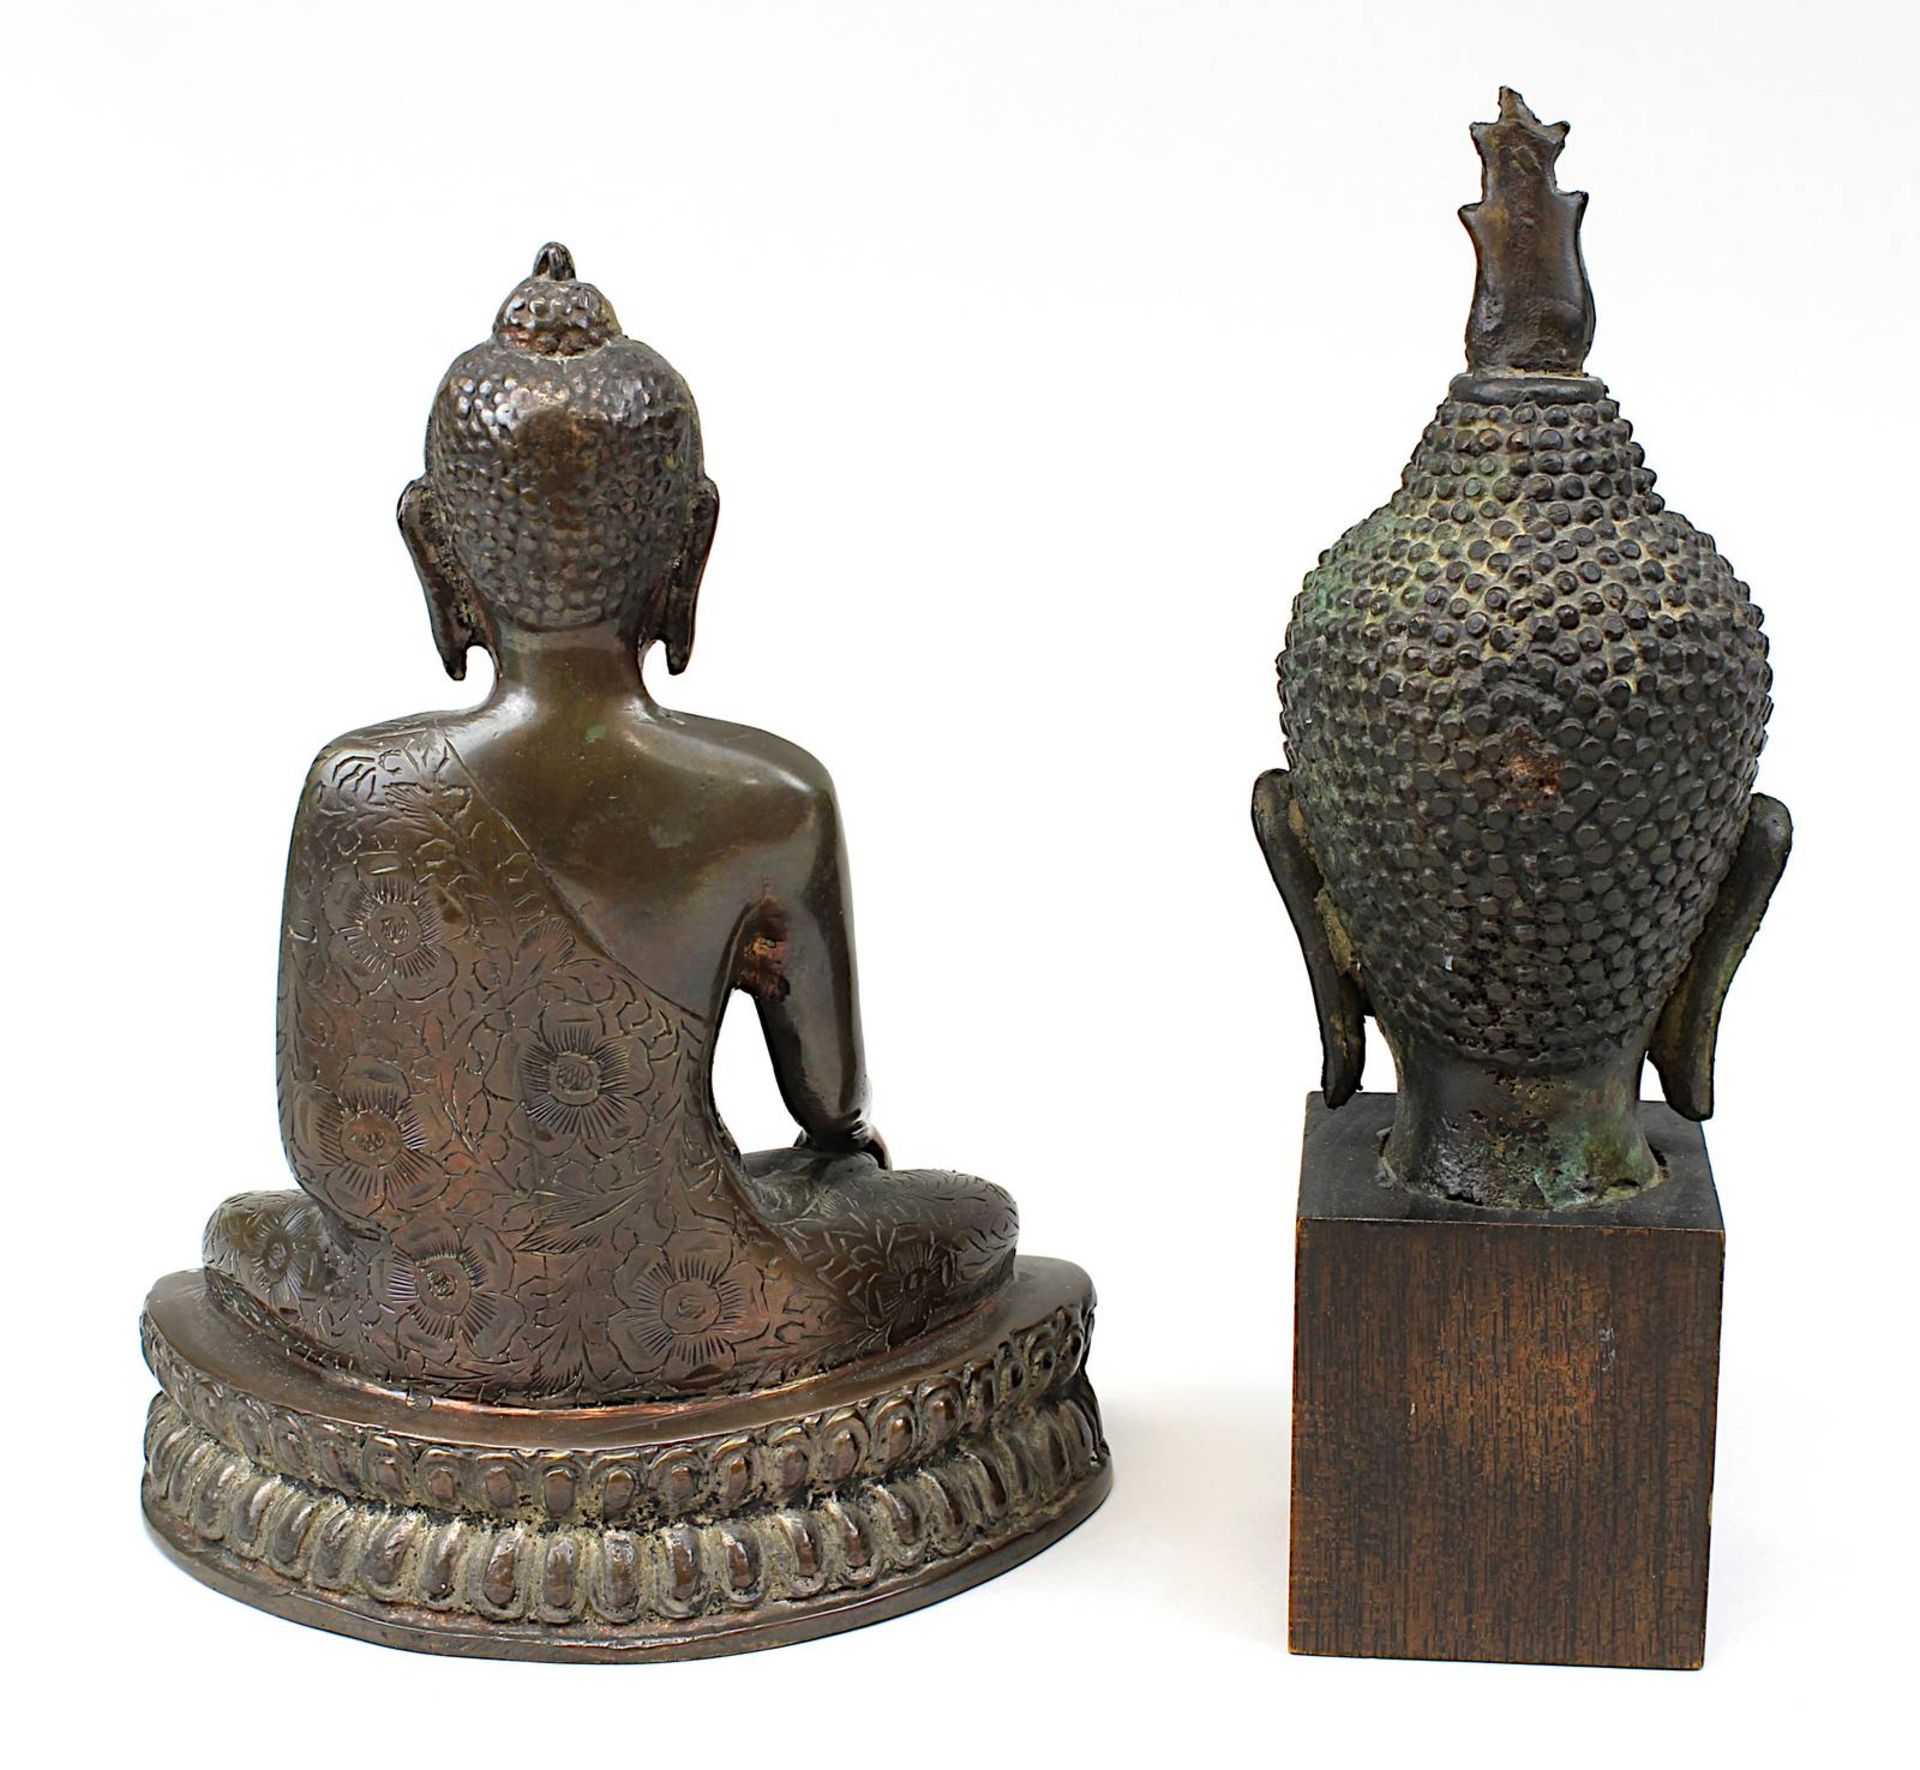 Sitzender Buddha und Kopf einer Buddha-Figur, Bronze, Thailand: Kopf des Buddha, Thailand wohl 19. - Image 2 of 2